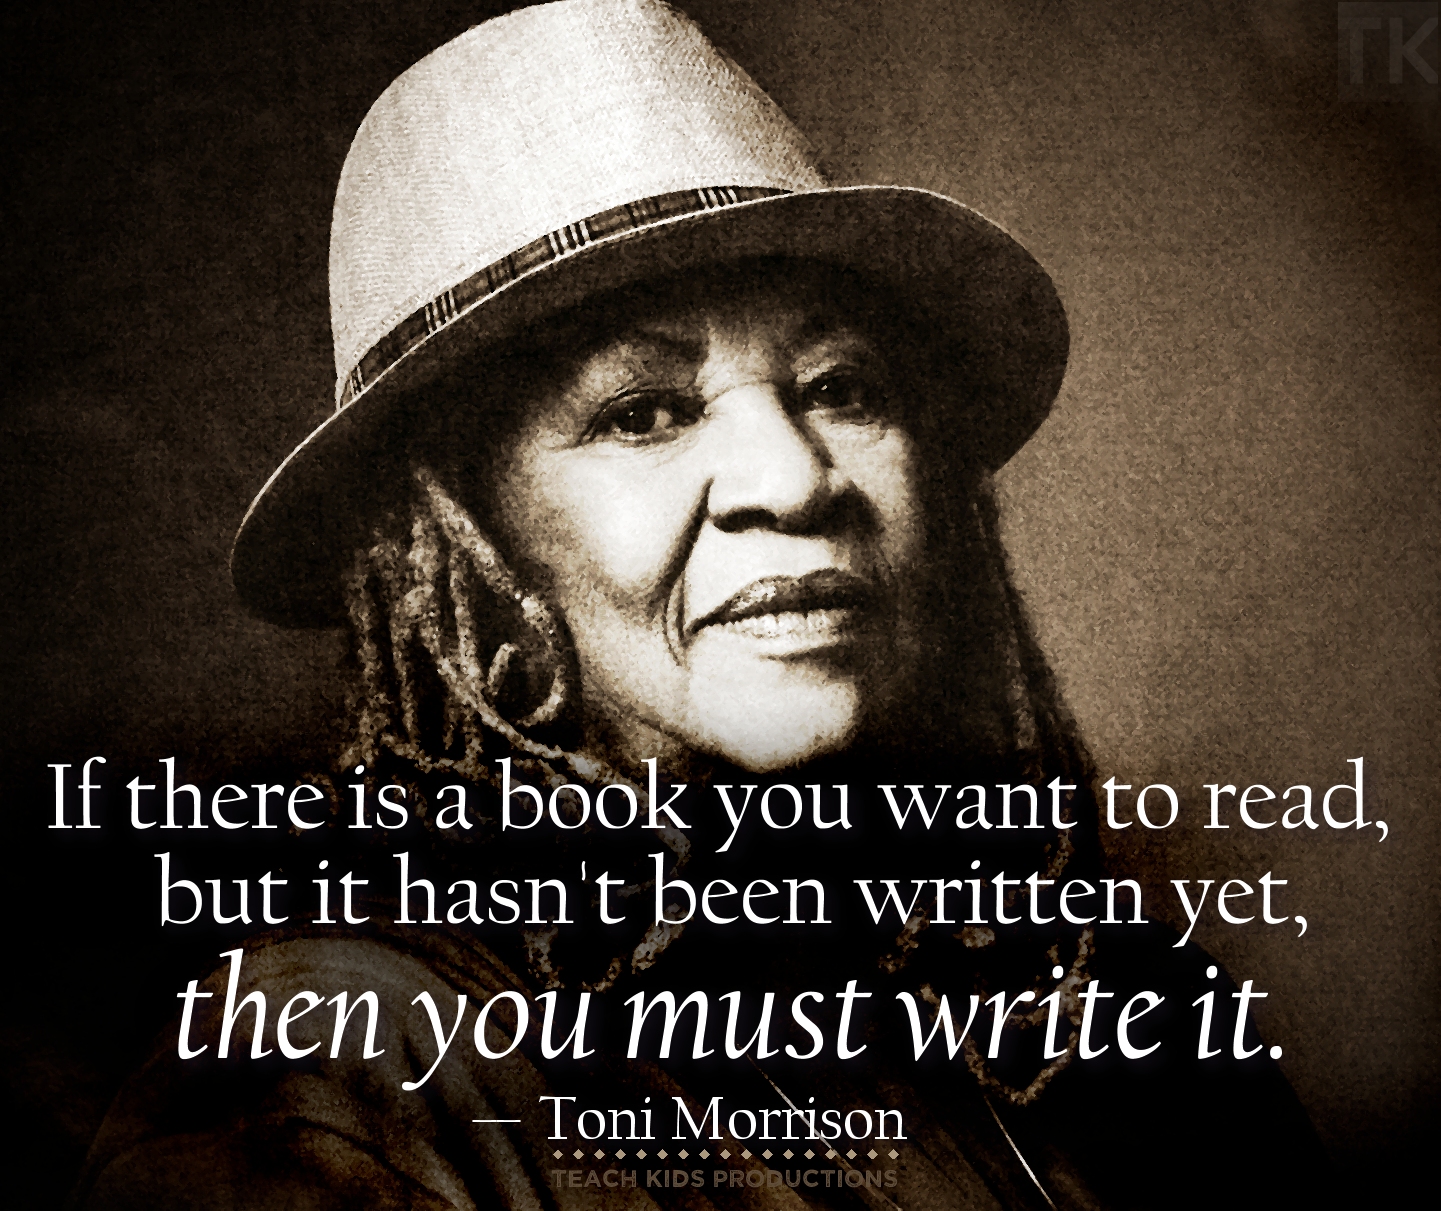 டோனி மொரிசனின் பிலவ்ட் (Beloved By Toni Morrison)  அயல்மொழி இலக்கியம்